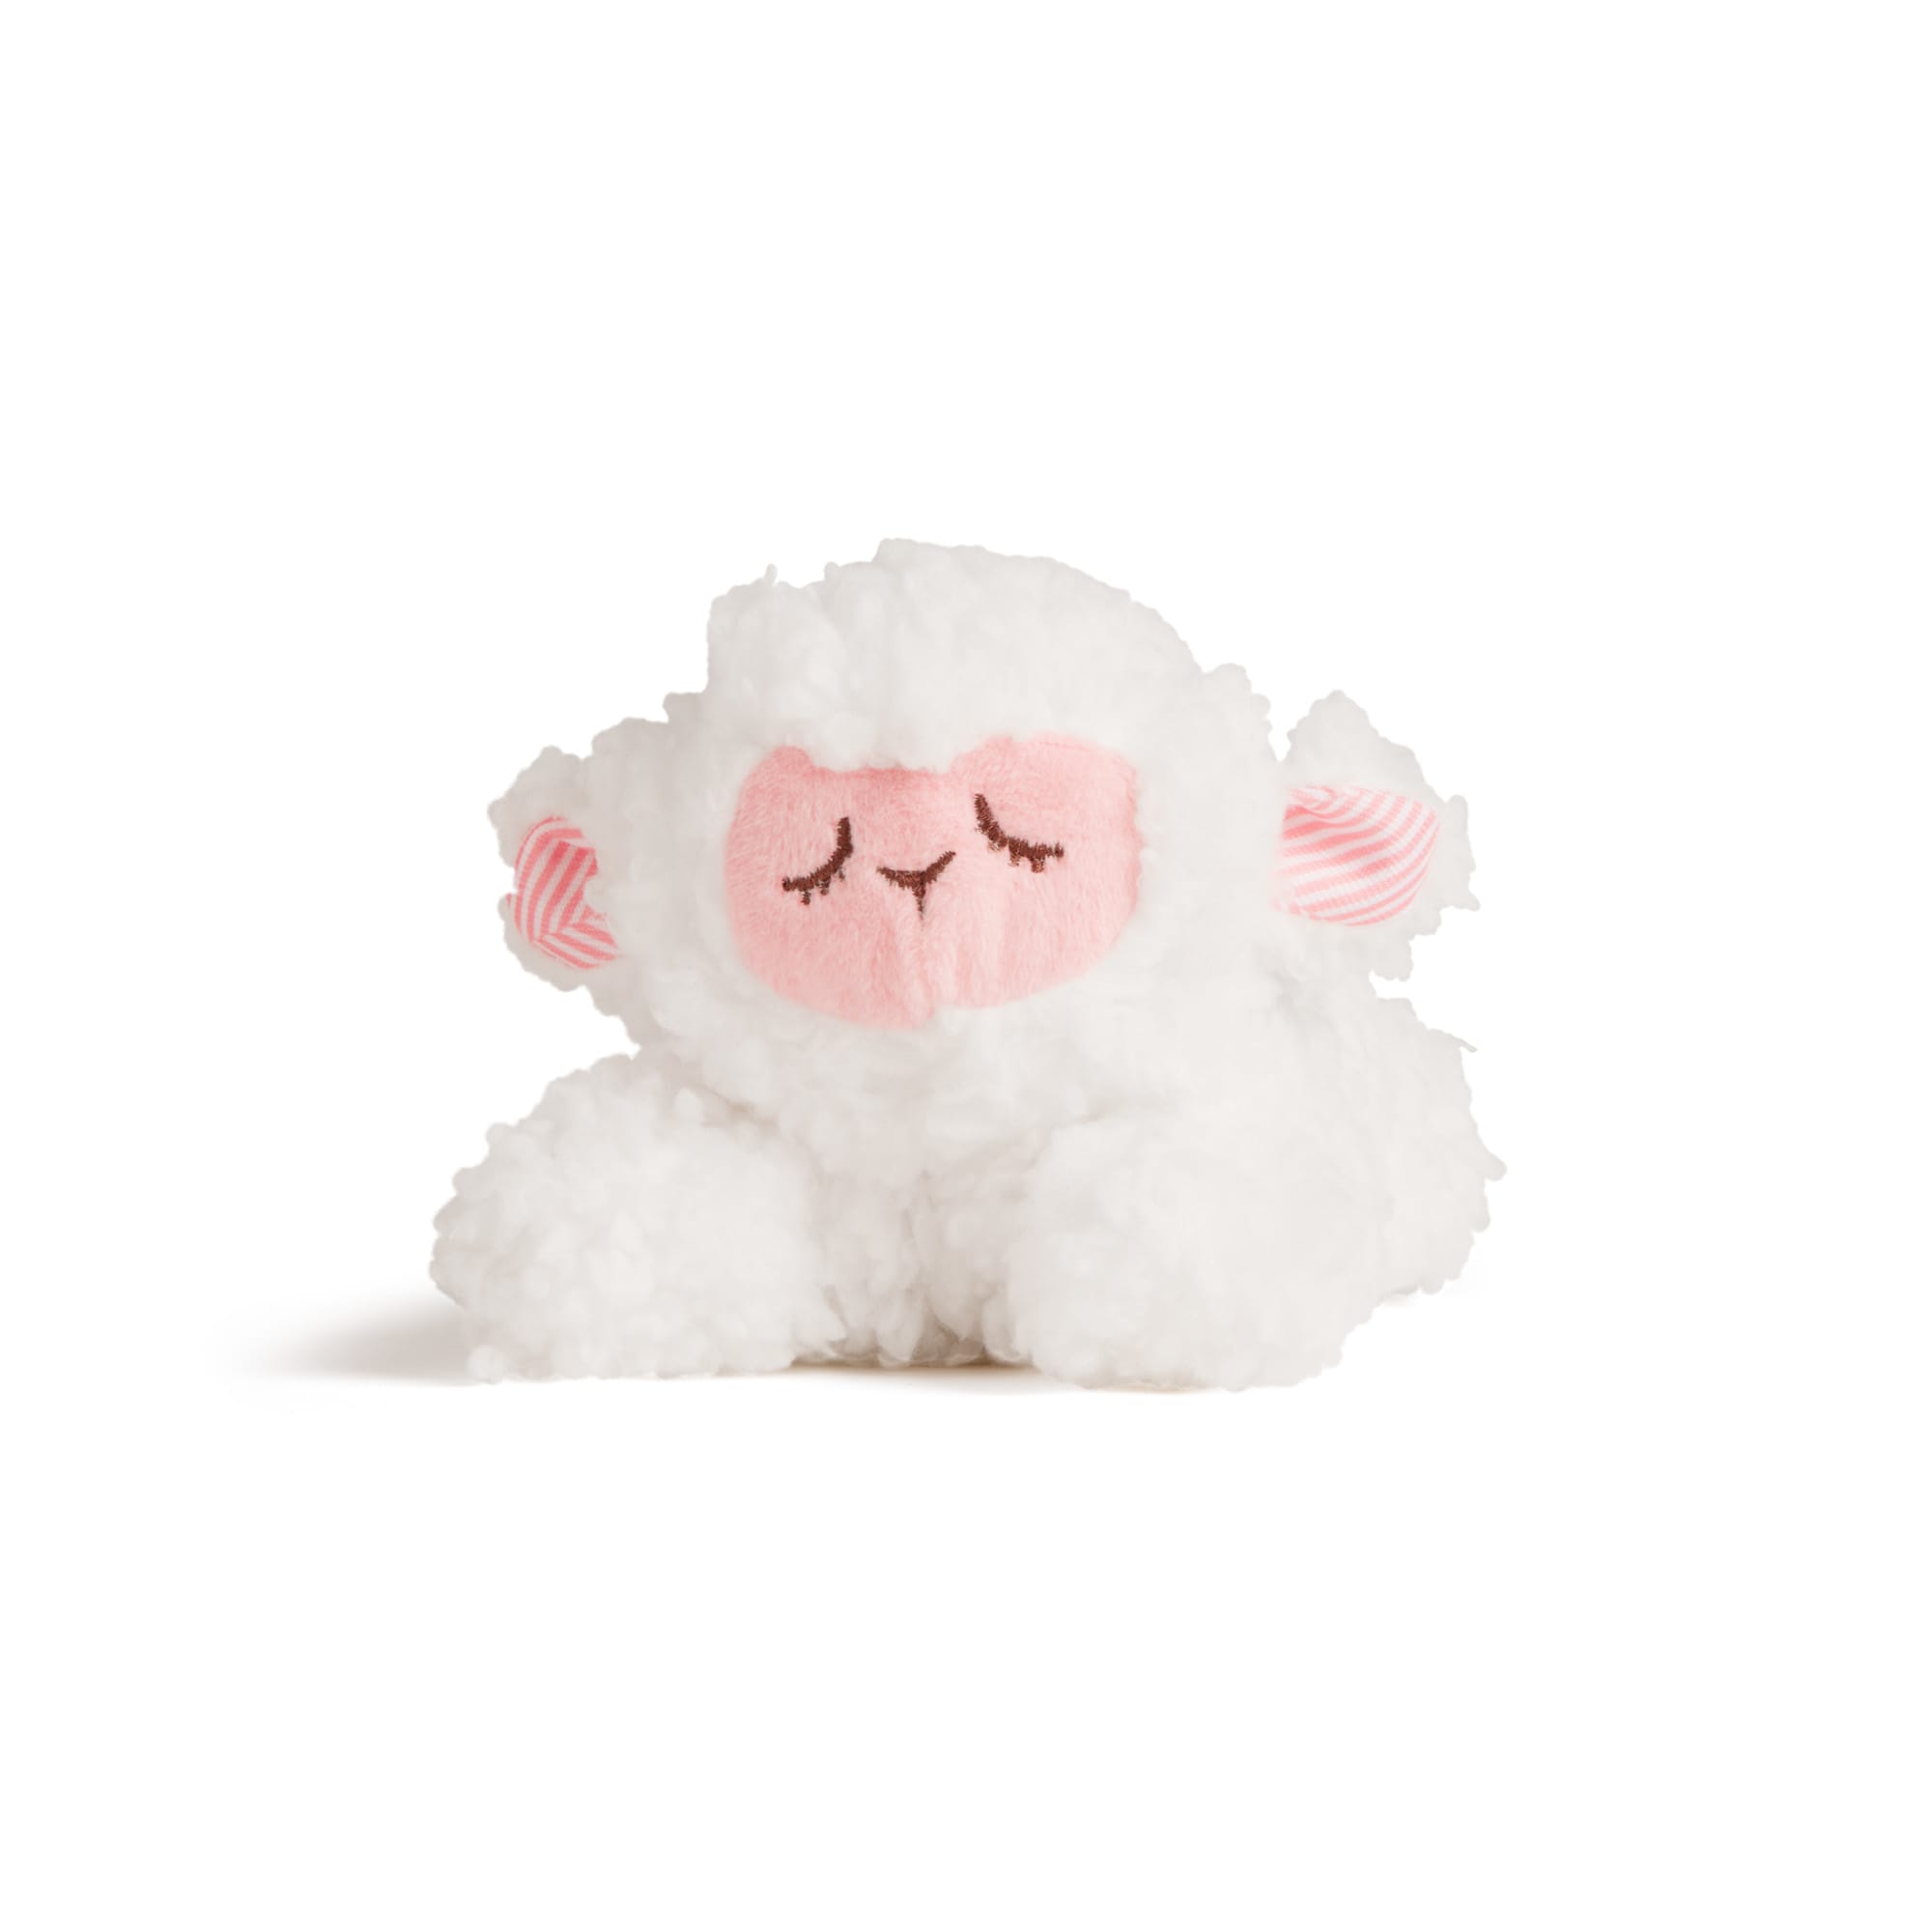 small stuffed sheep